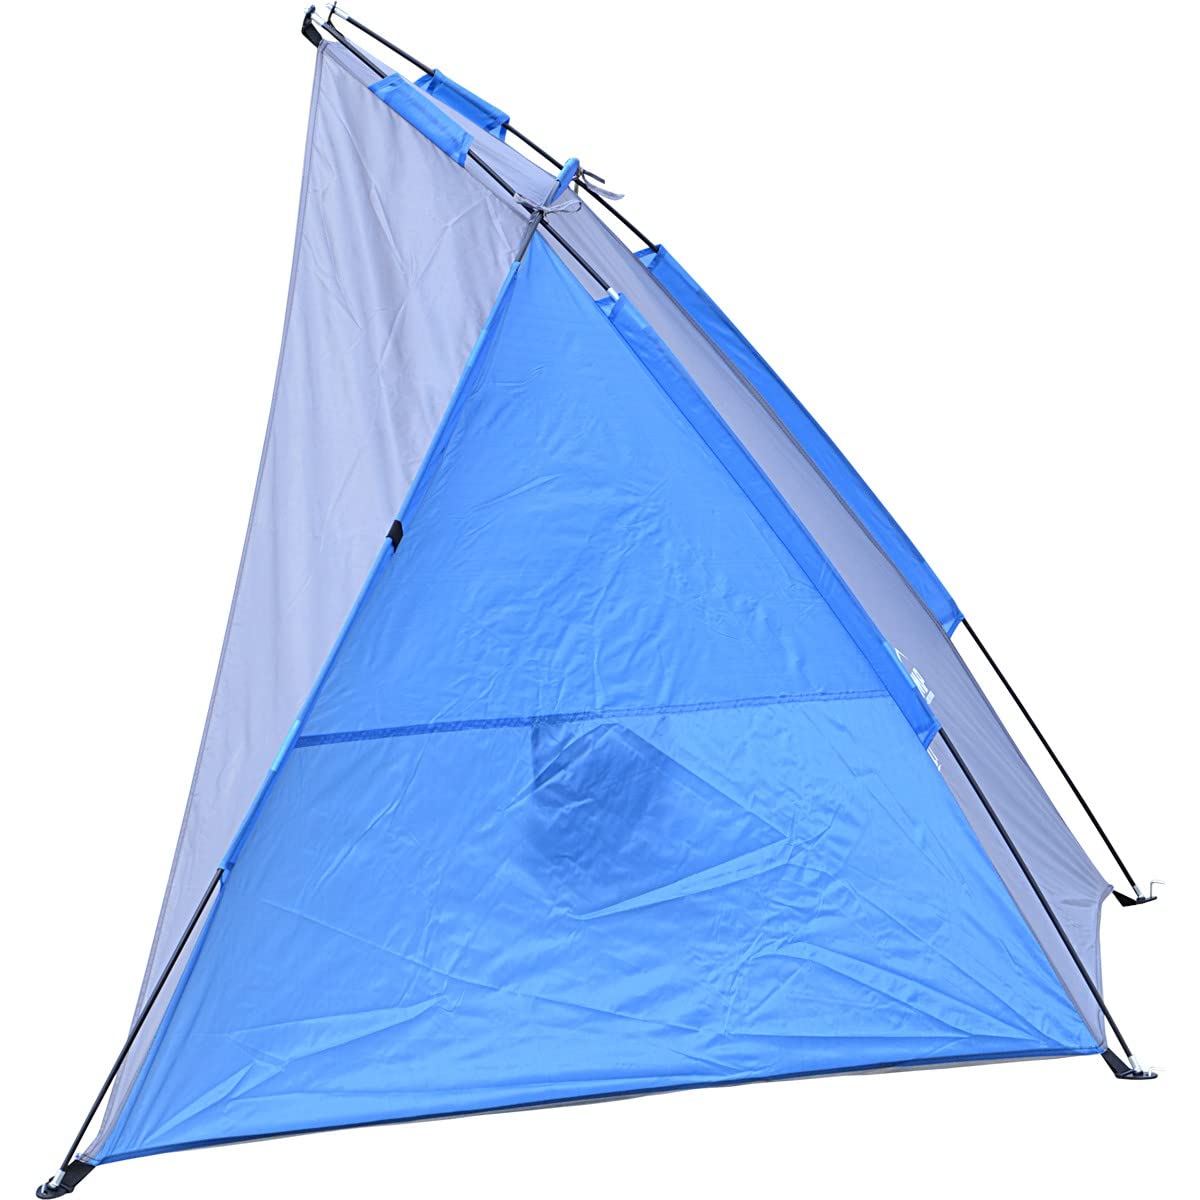 Enero Camp Sun Pop-Up-Strandzelt – Outdoor-Sonnenschutzzelt für 2 Personen – wasserdichtes und UV-beständiges Vordach – Sonnenschutz mit Tragetasche – 200 x 100 x 105 cm – Blau und Grau